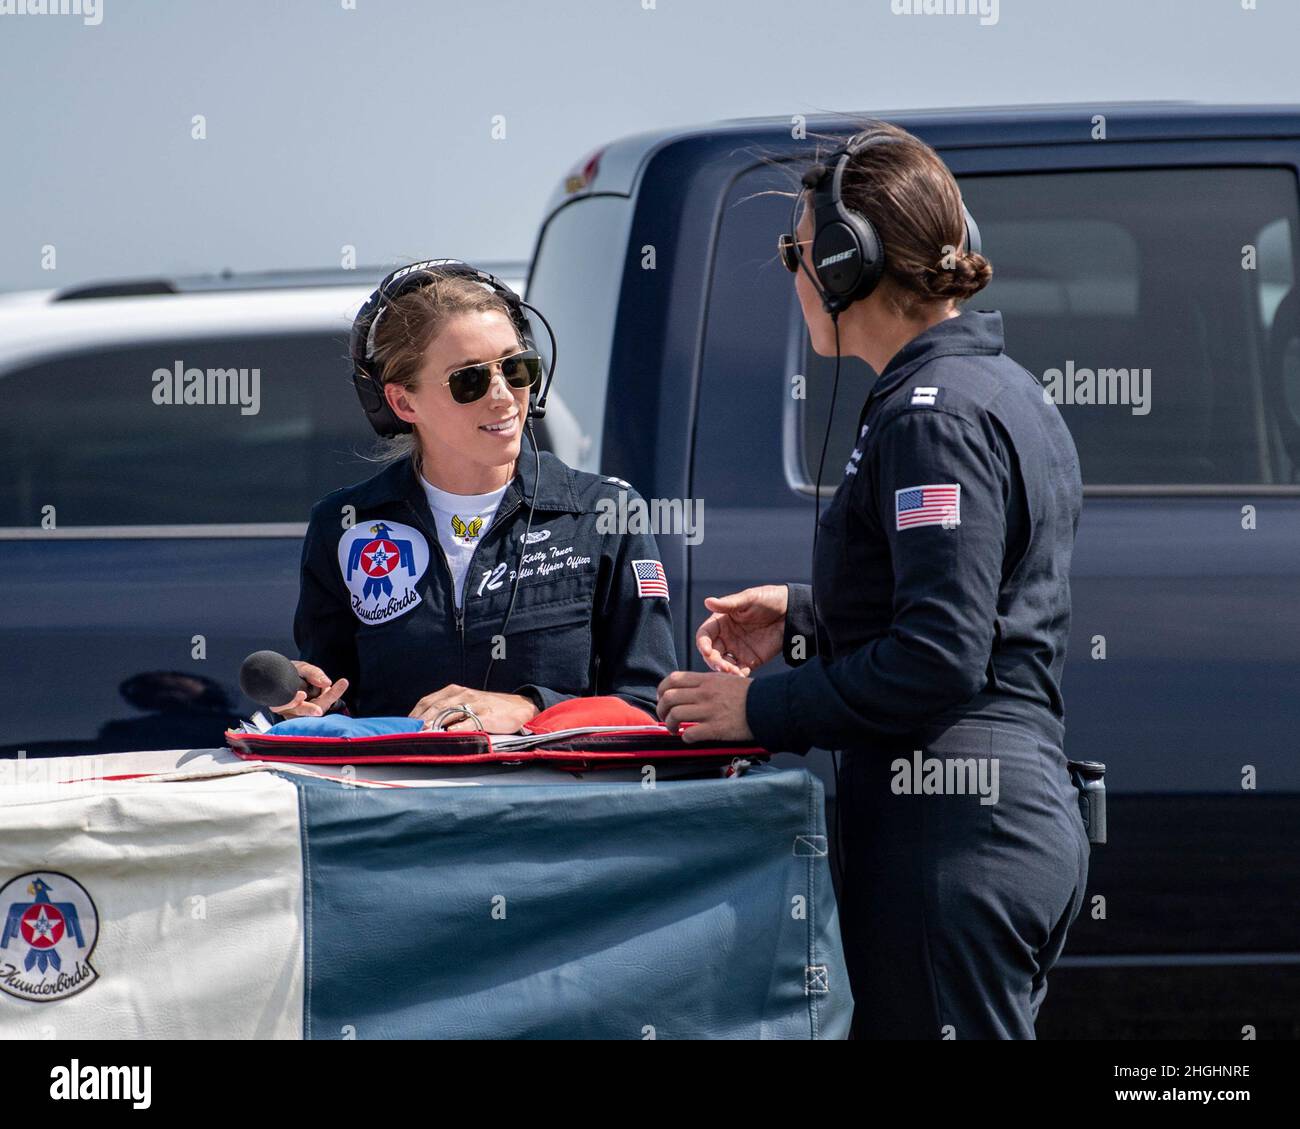 Das Air Force Demonstration Squadron der Vereinigten Staaten, „Thunderbirds“, führt eine Übungsdemonstration über dem Himmel von Ypsilanti, Michigan, am 6. August 2021 durch. Das Team führt in der Regel am Tag vor einer Airshow Übungsvorführungen durch. Stockfoto